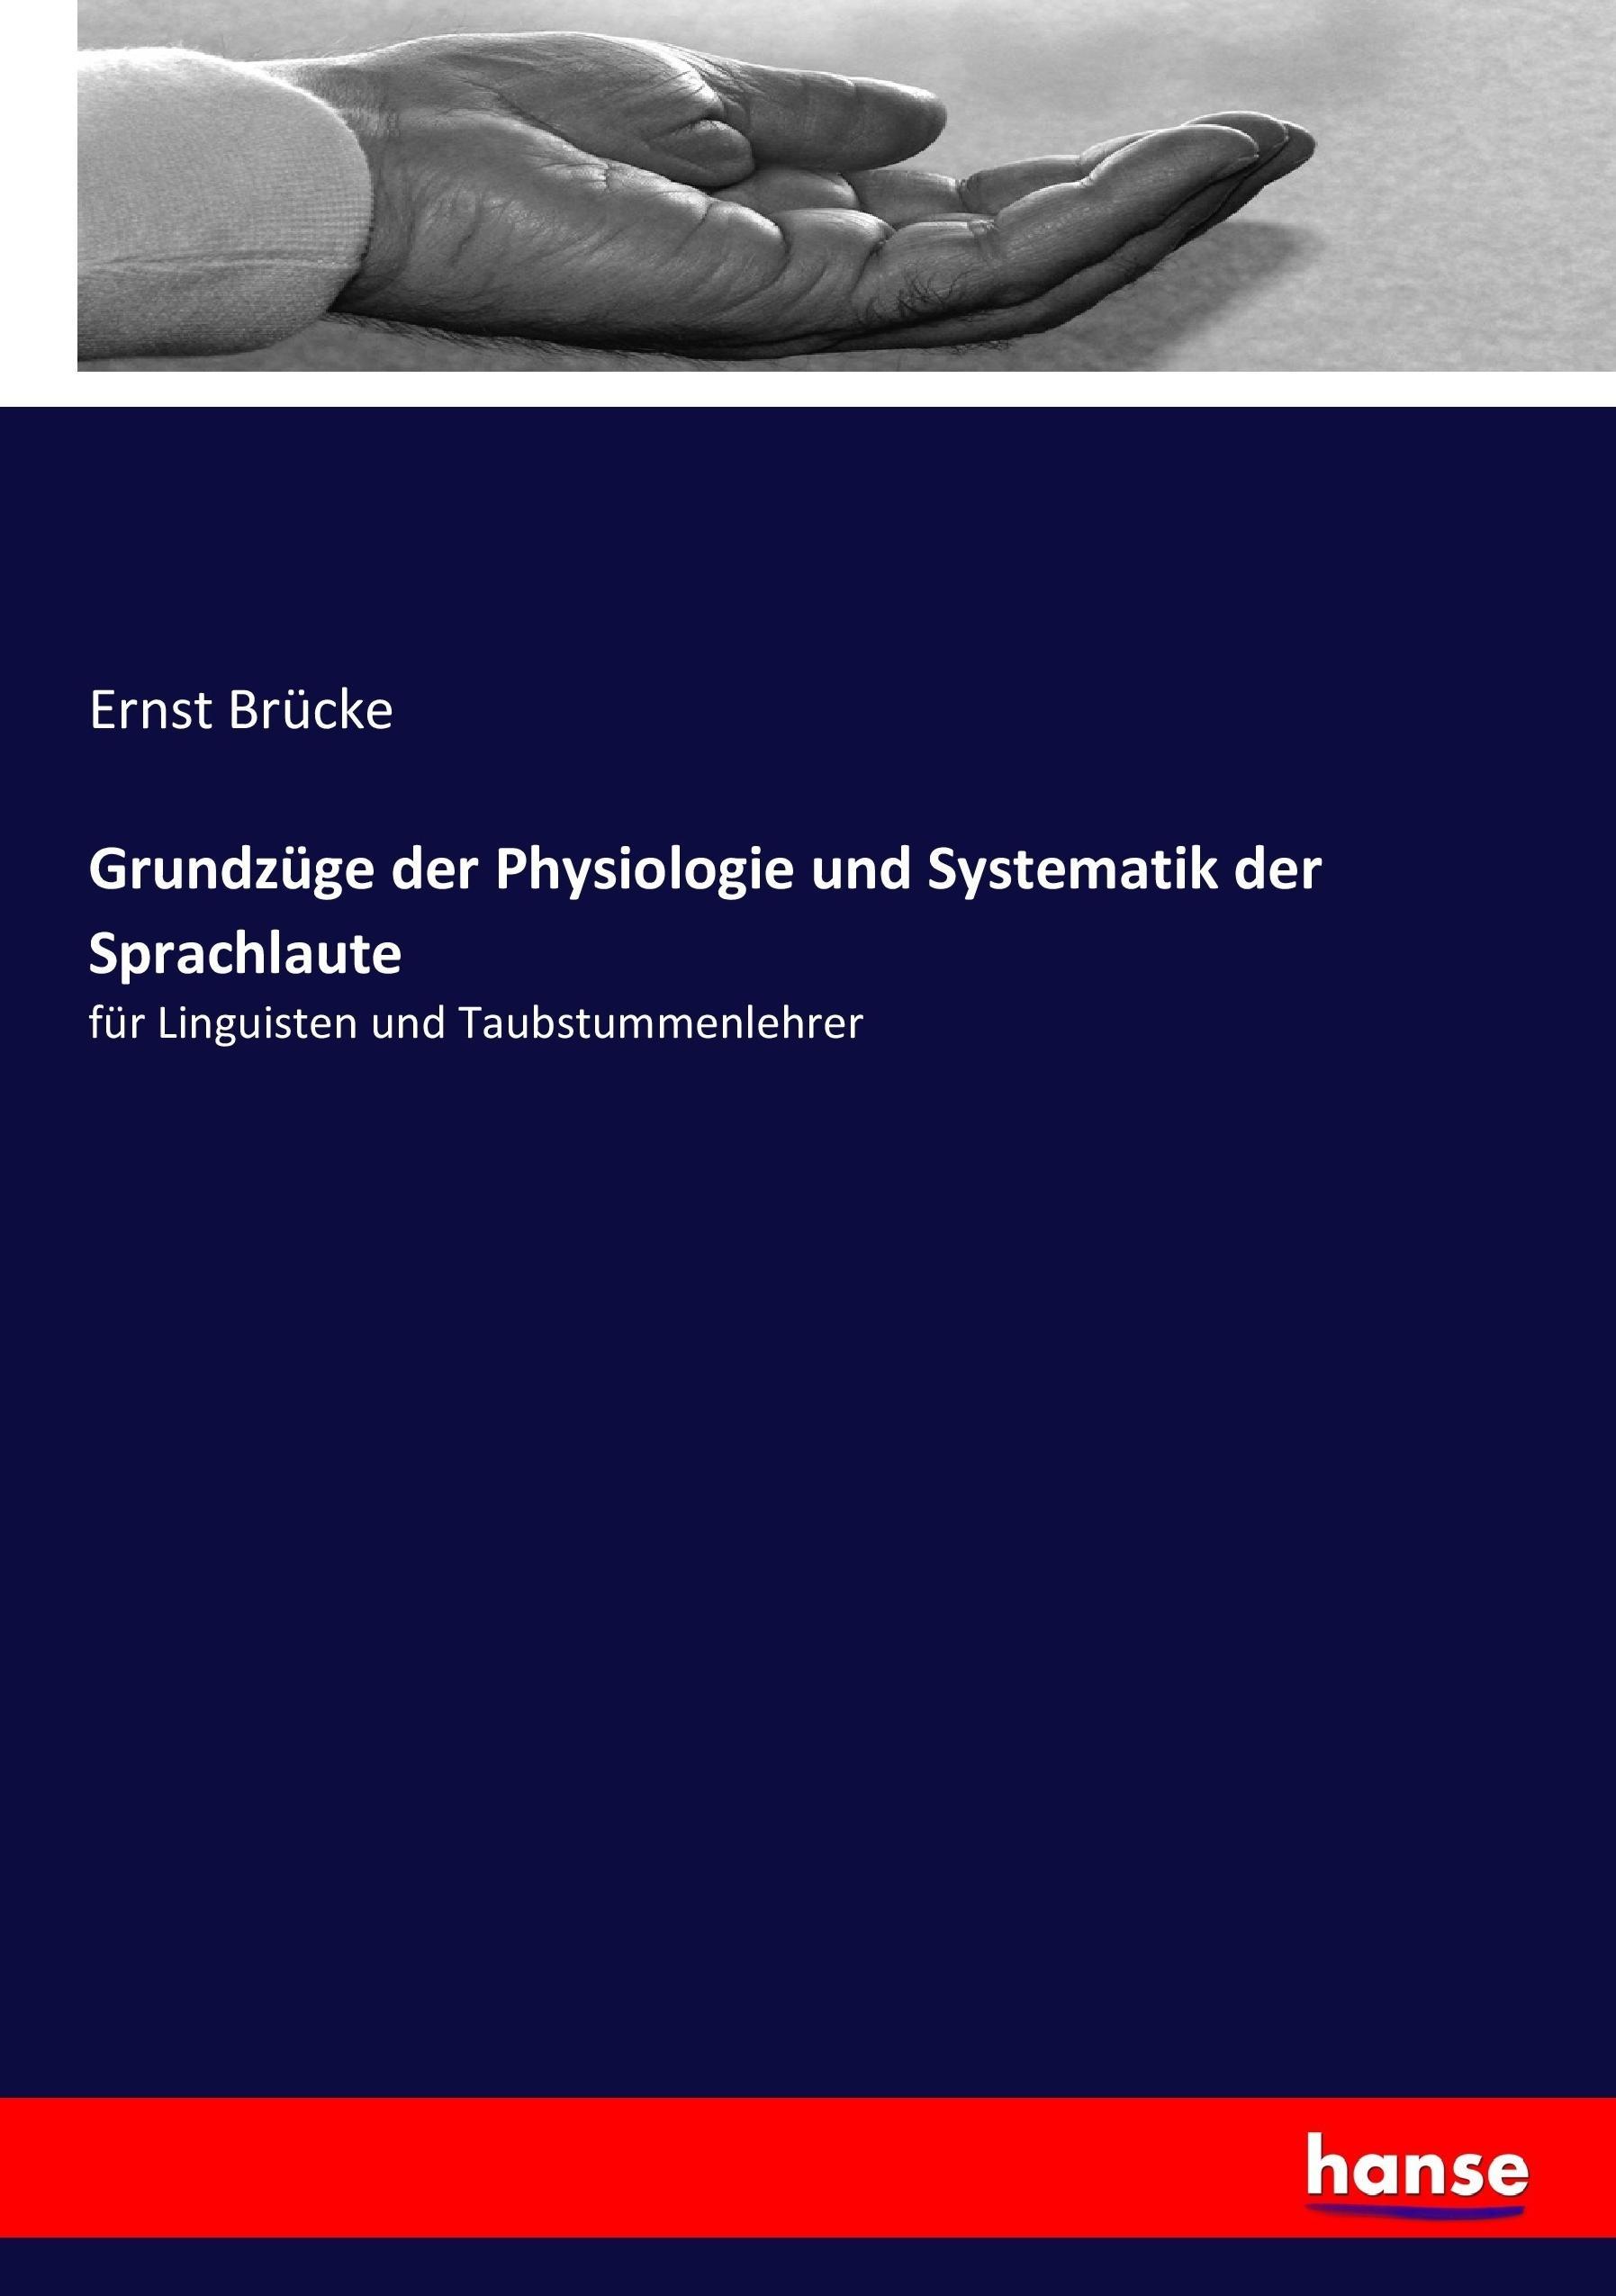 Grundzuege der Physiologie und Systematik der Sprachlaute - Bruecke, Ernst